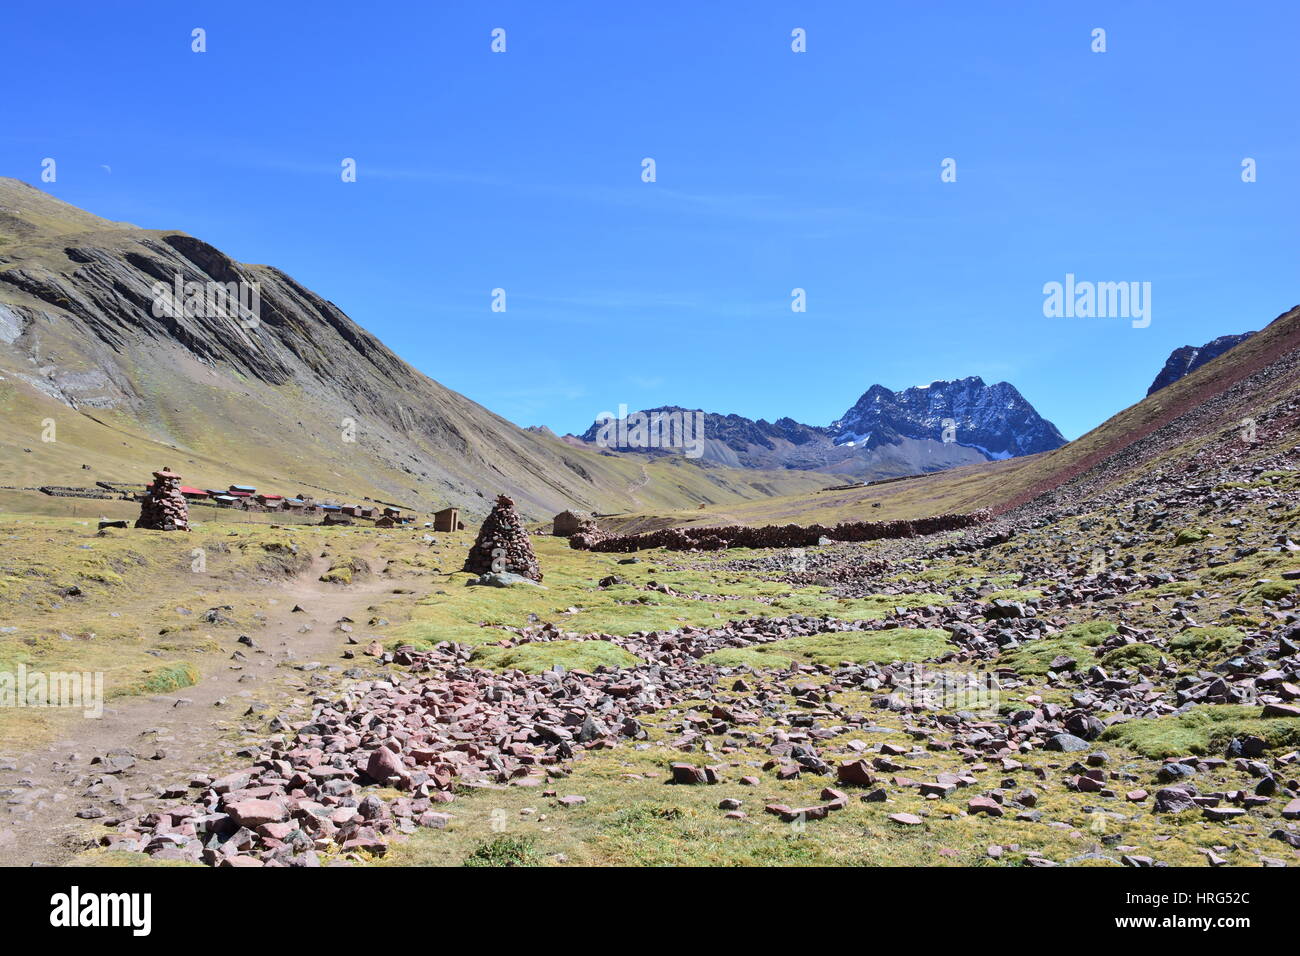 Wunderschöne Landschaft des Cerro Colorado - aka Rainbow Mountain, Vinicunca oder Ausangate - in der Region von Cusco, Peru Stockfoto